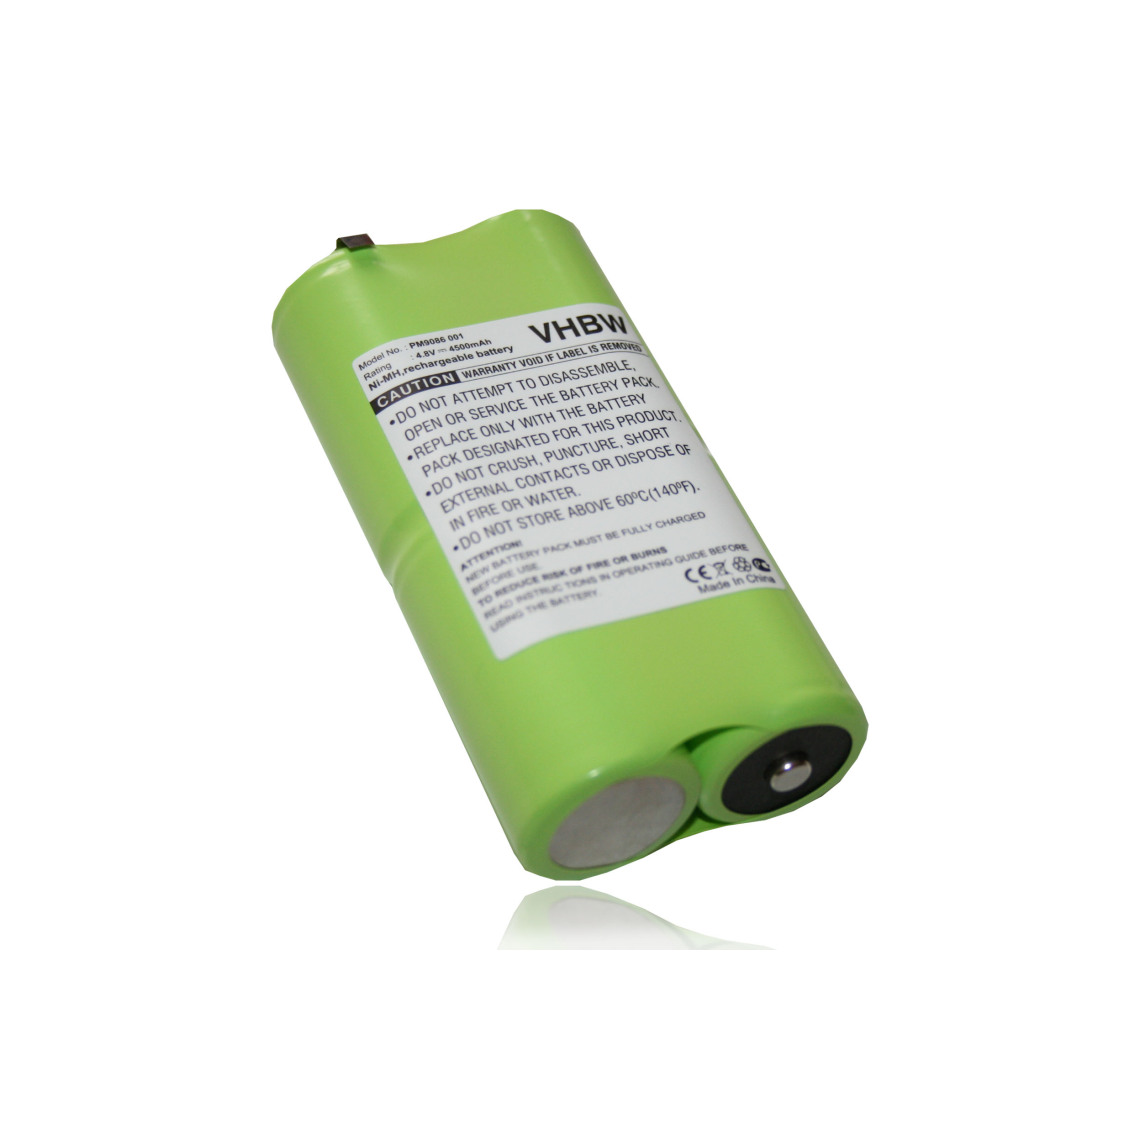 Vhbw - vhbw Batterie remplace PM9086 001 pour outil de mesure (4500mAh 4,8V NiMH) - Piles rechargeables